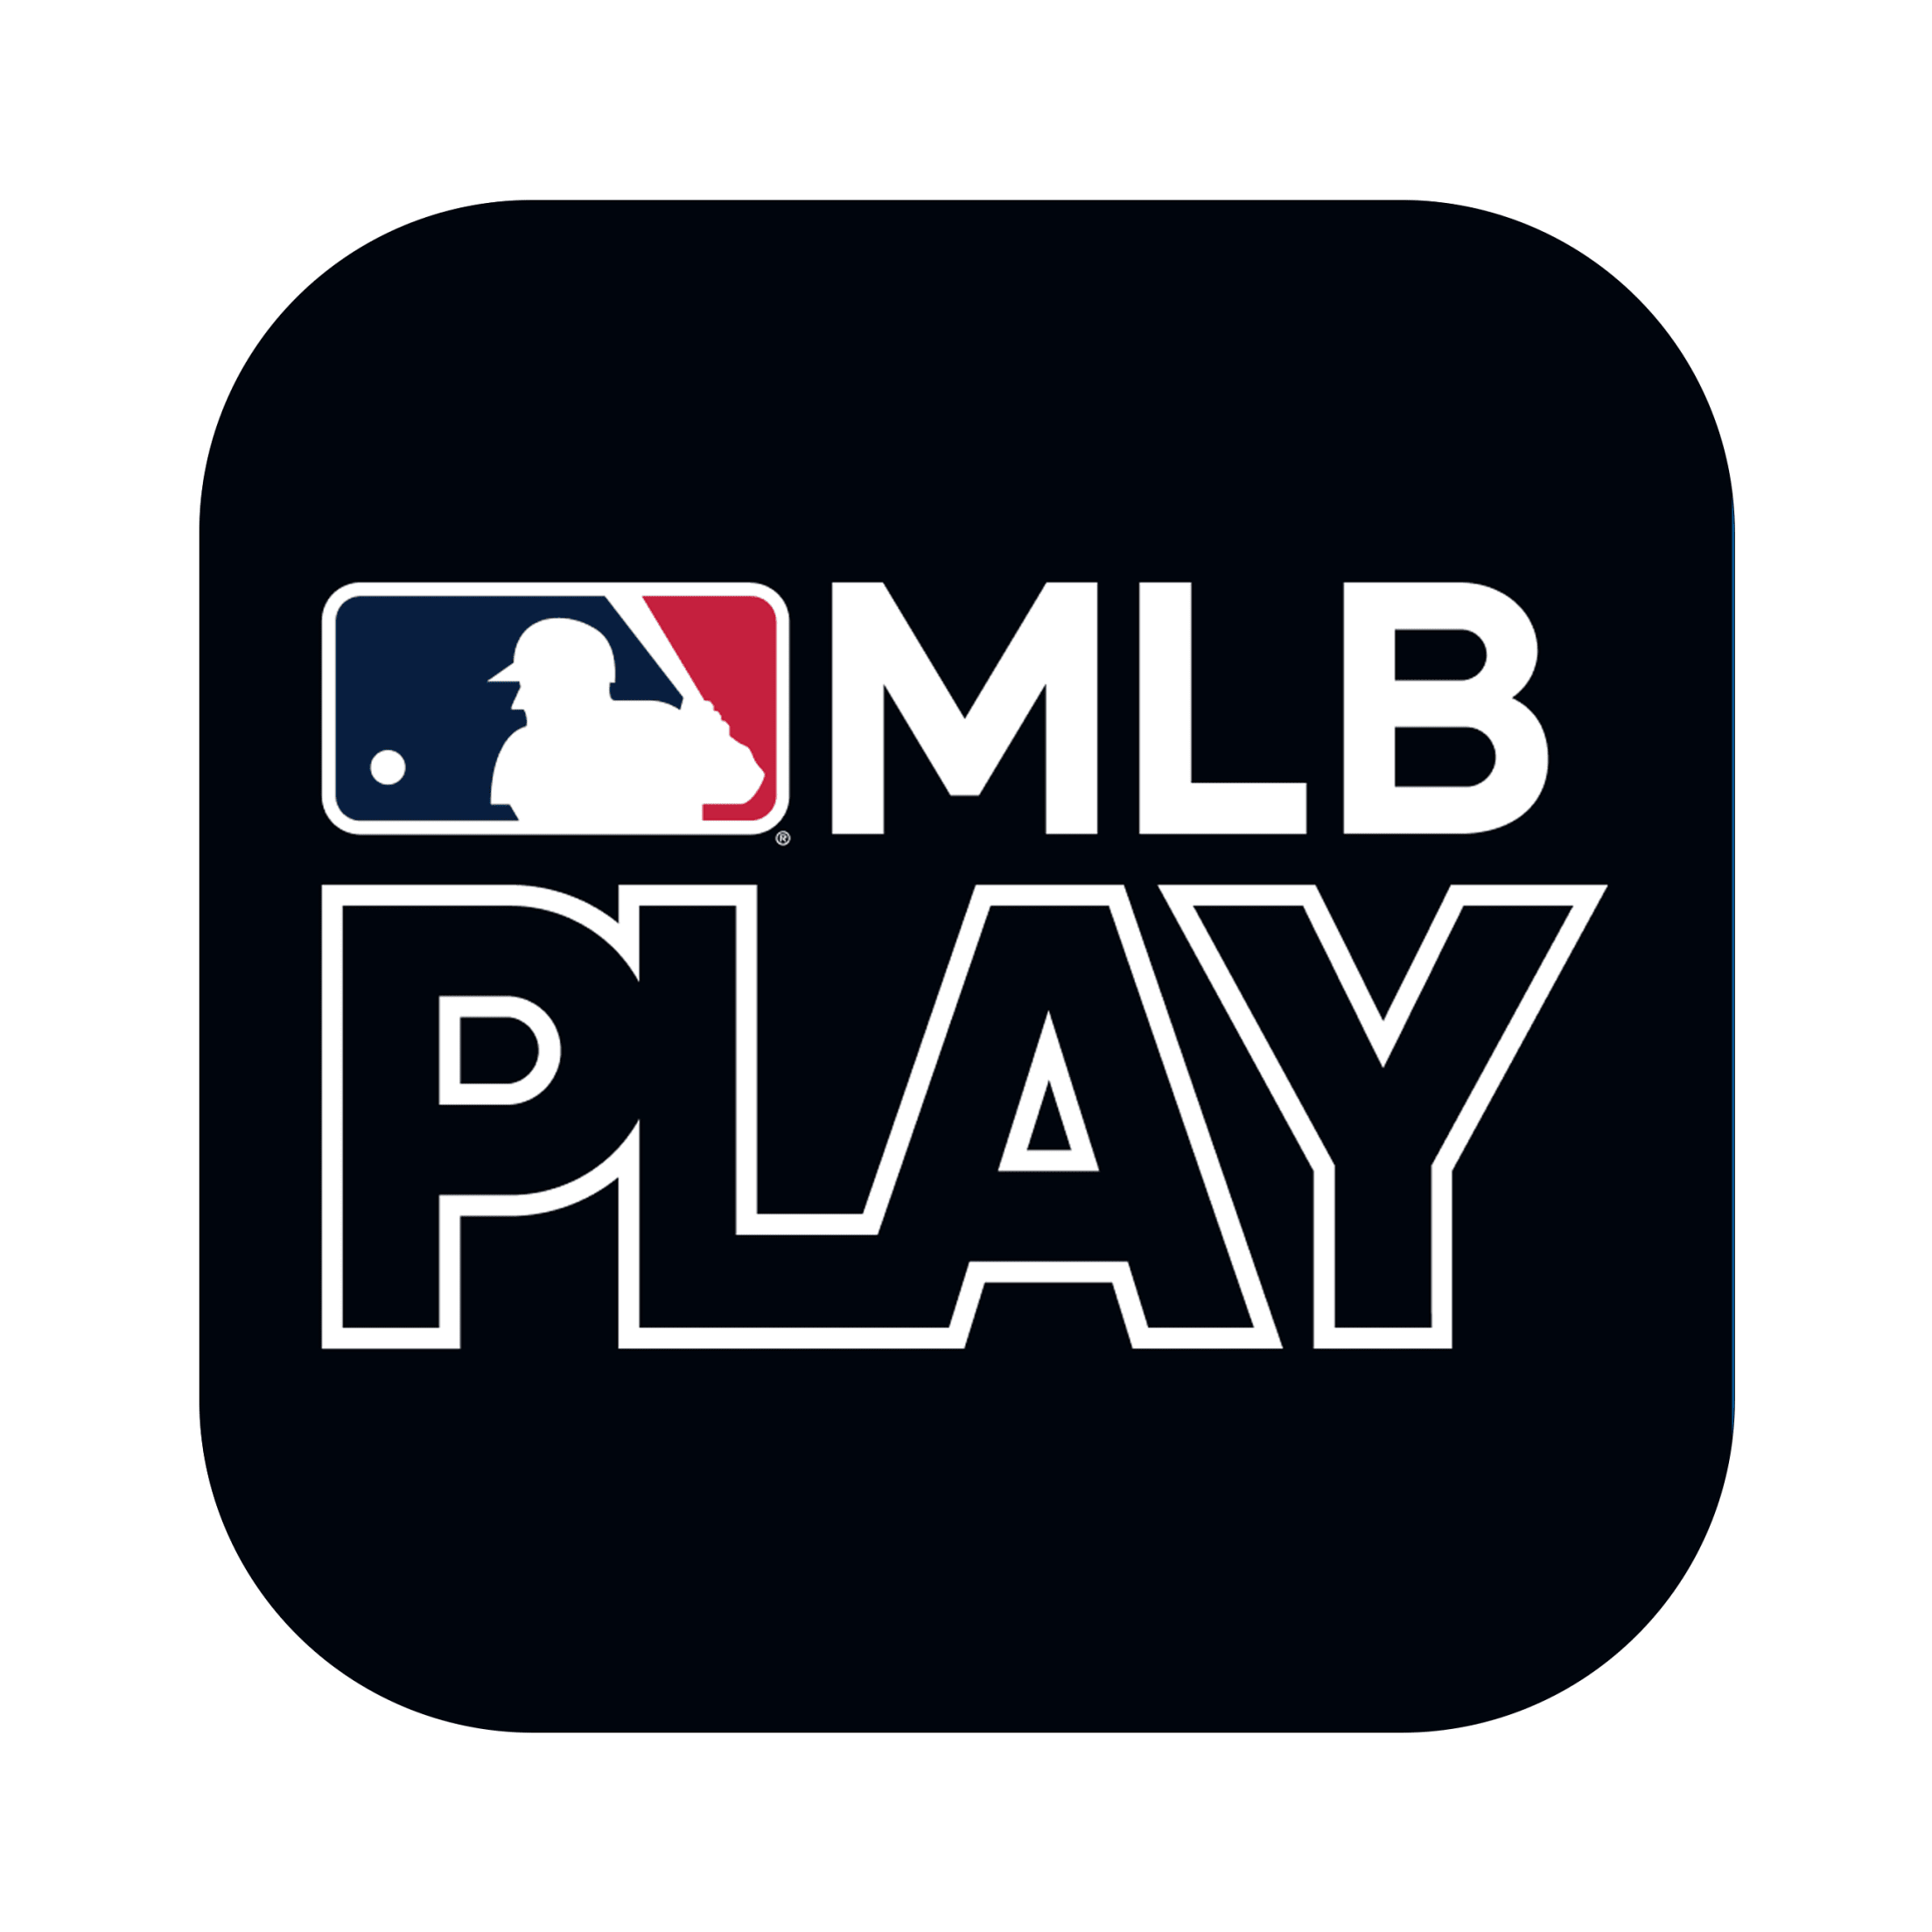 MLB Apps